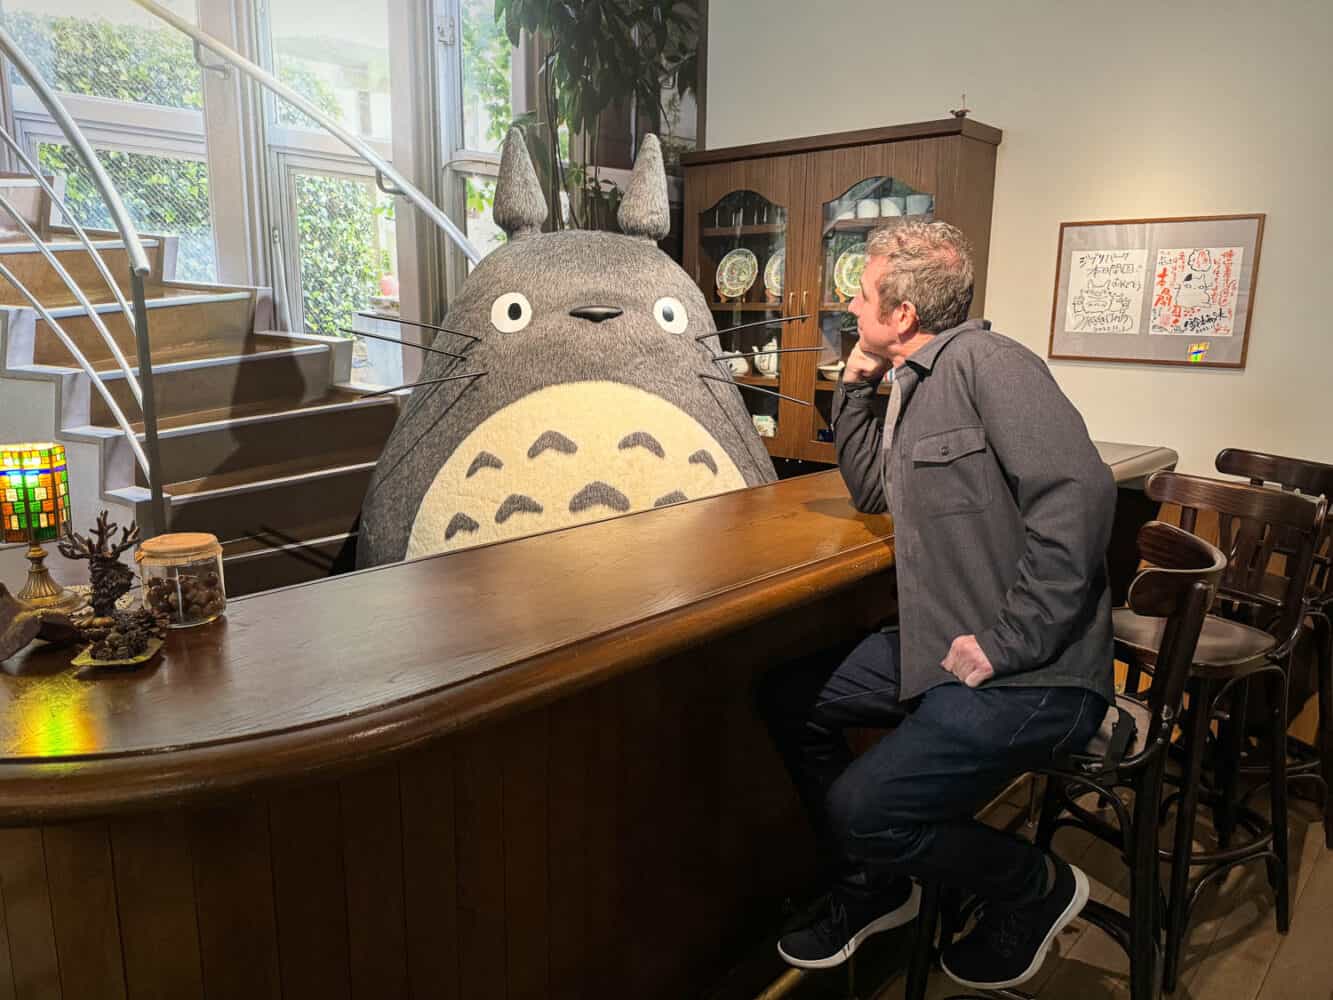 Meeting Totoro at the bar at Ghibli Park in Nagoya, Japan